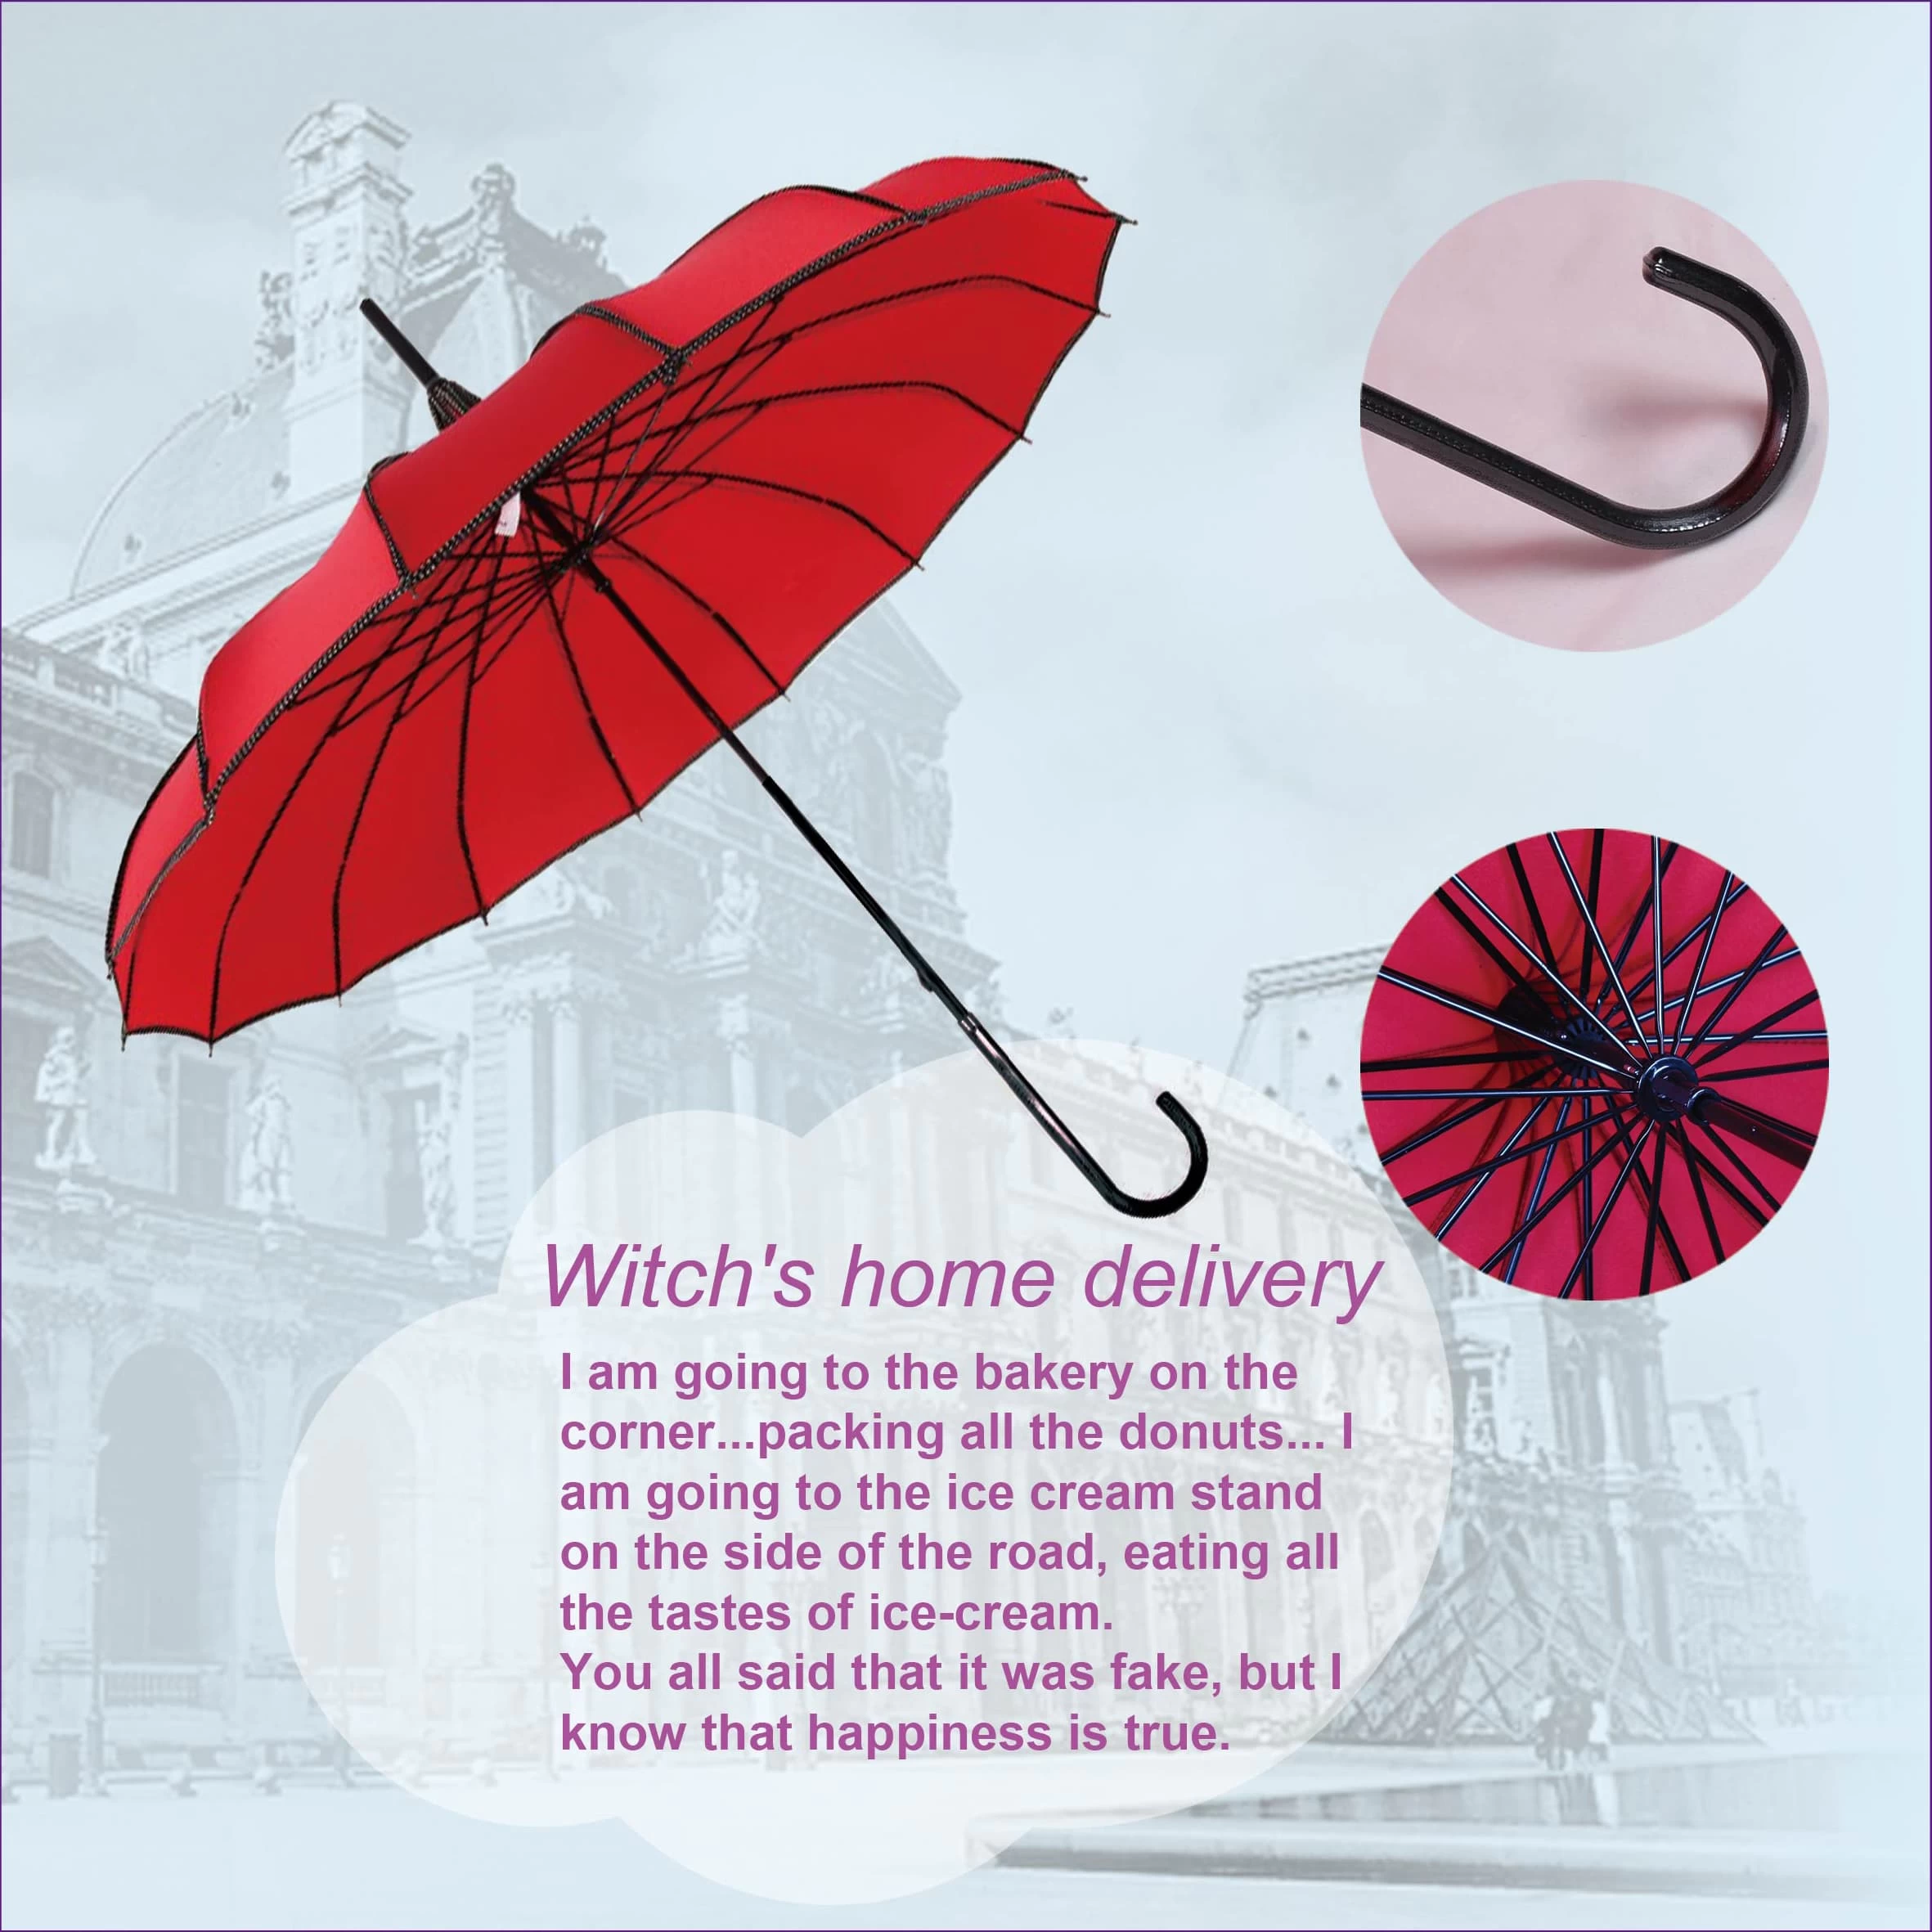 Waarom zou u geen beter uitziende paraplu kiezen?